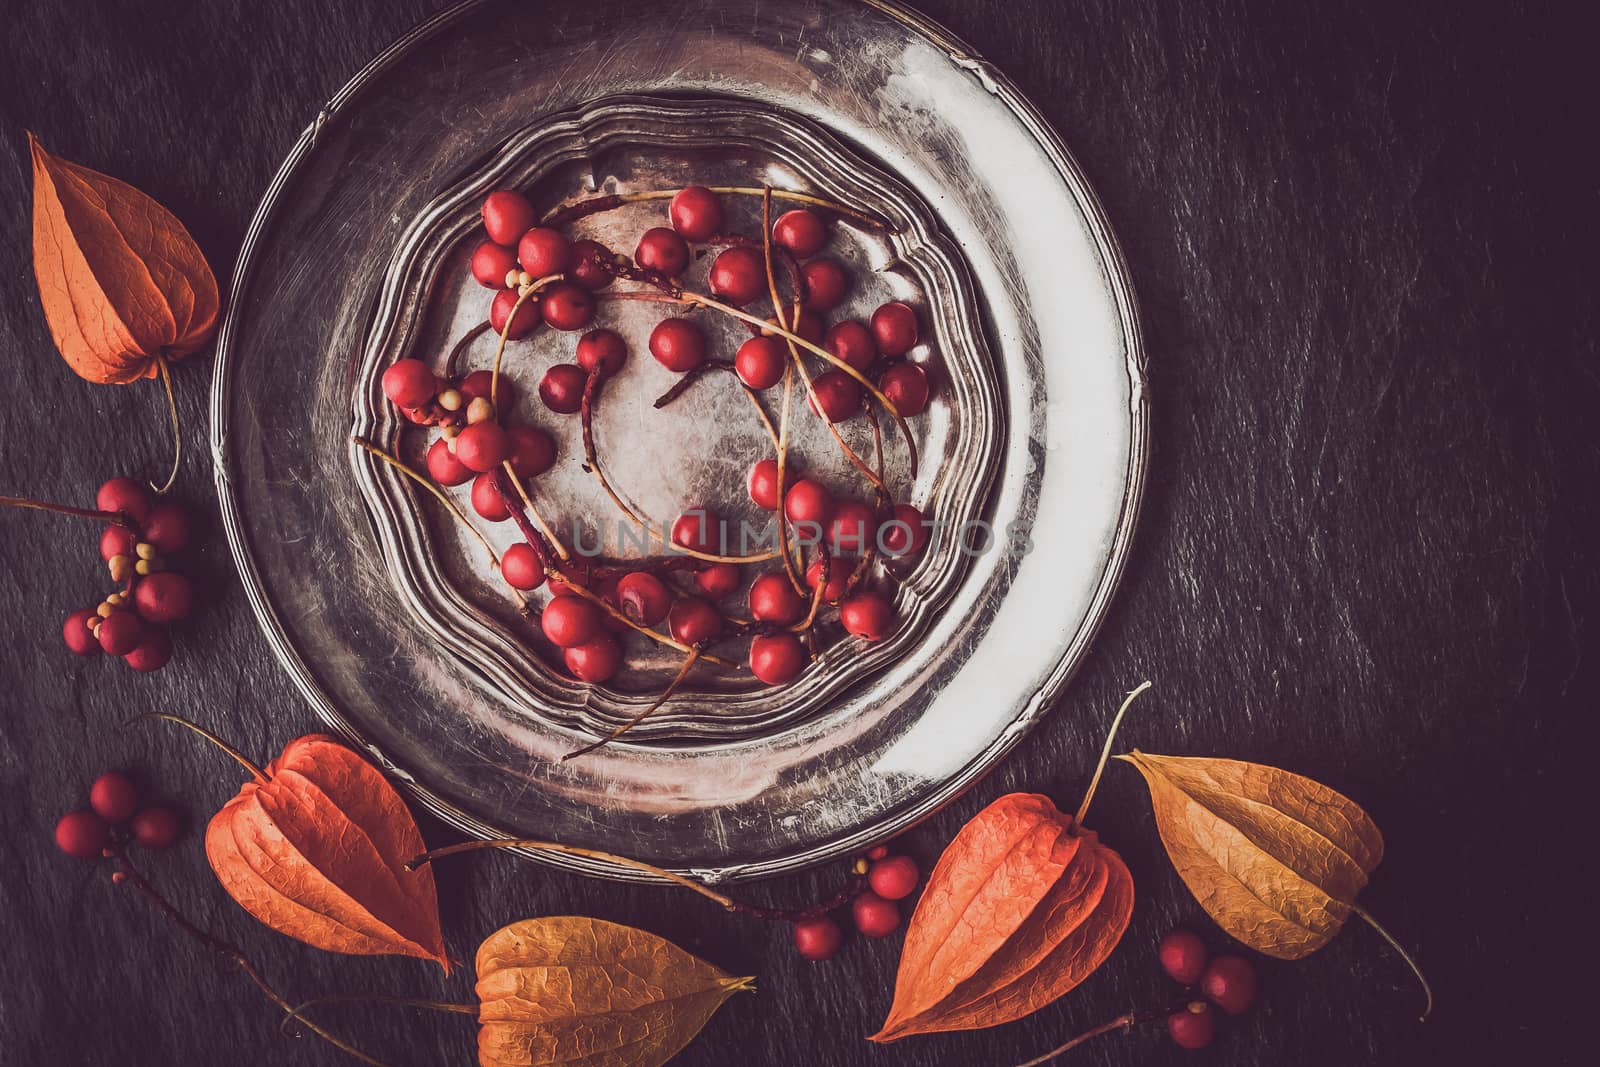 Red berries in the vintage metal plate by Deniskarpenkov